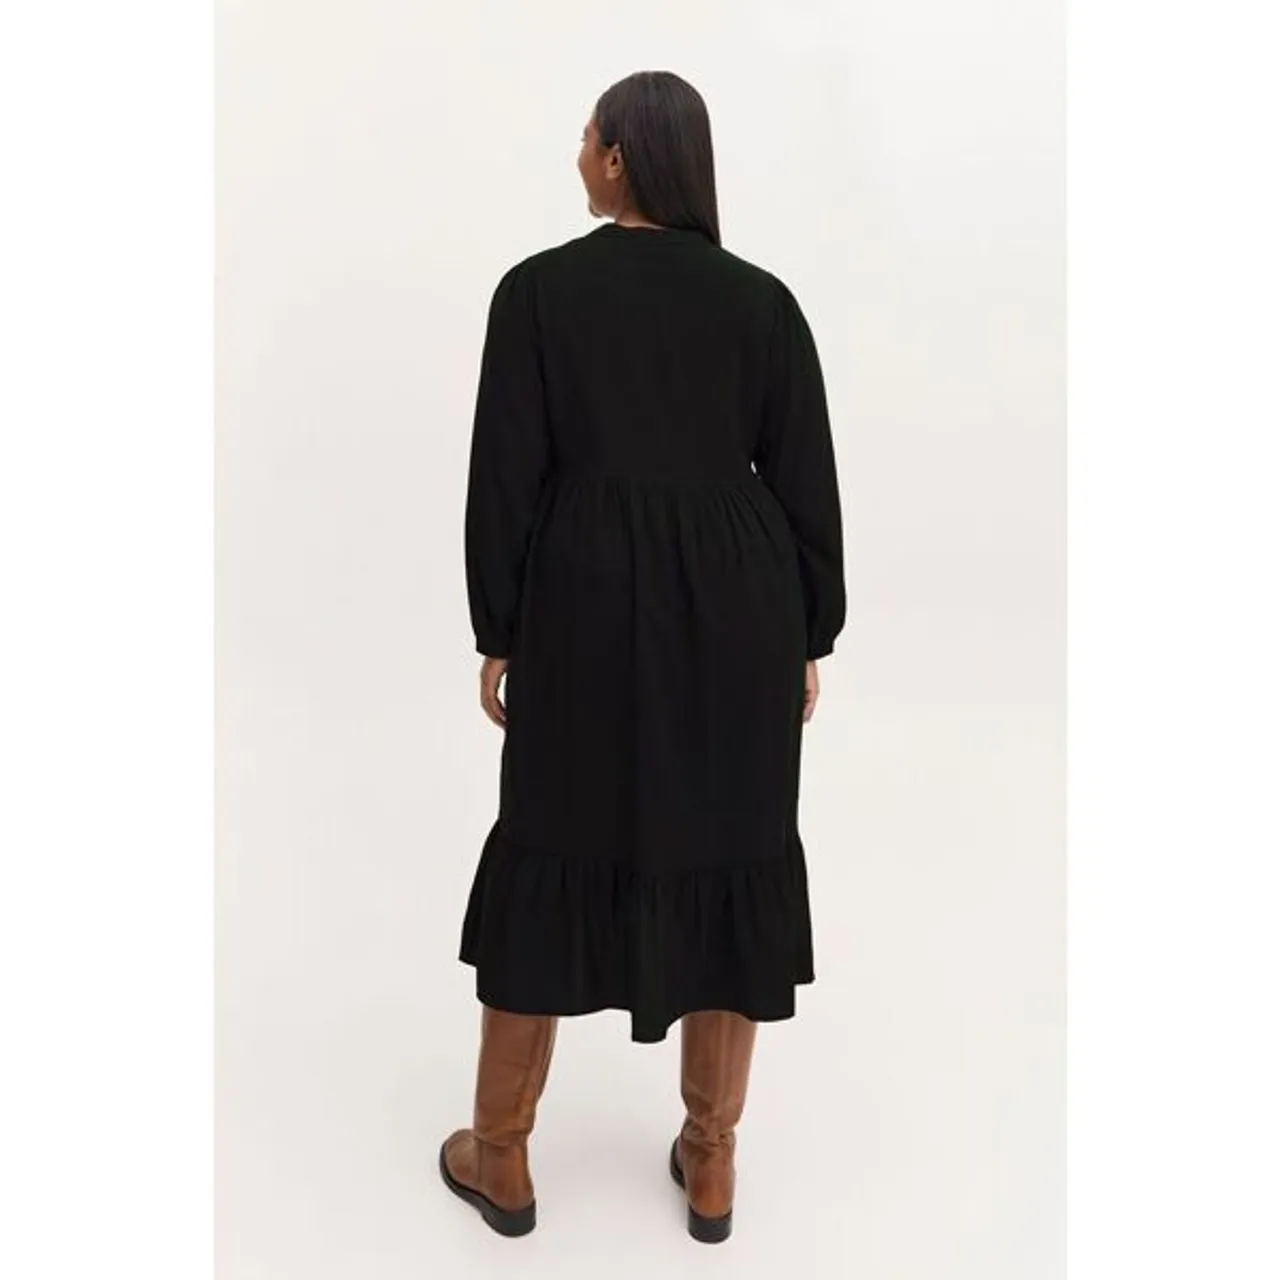 Blusenkleid FRANSA "Fransa FRLUX" Gr. 46, EURO-Größen, schwarz (black) Damen Kleider Blusenkleider